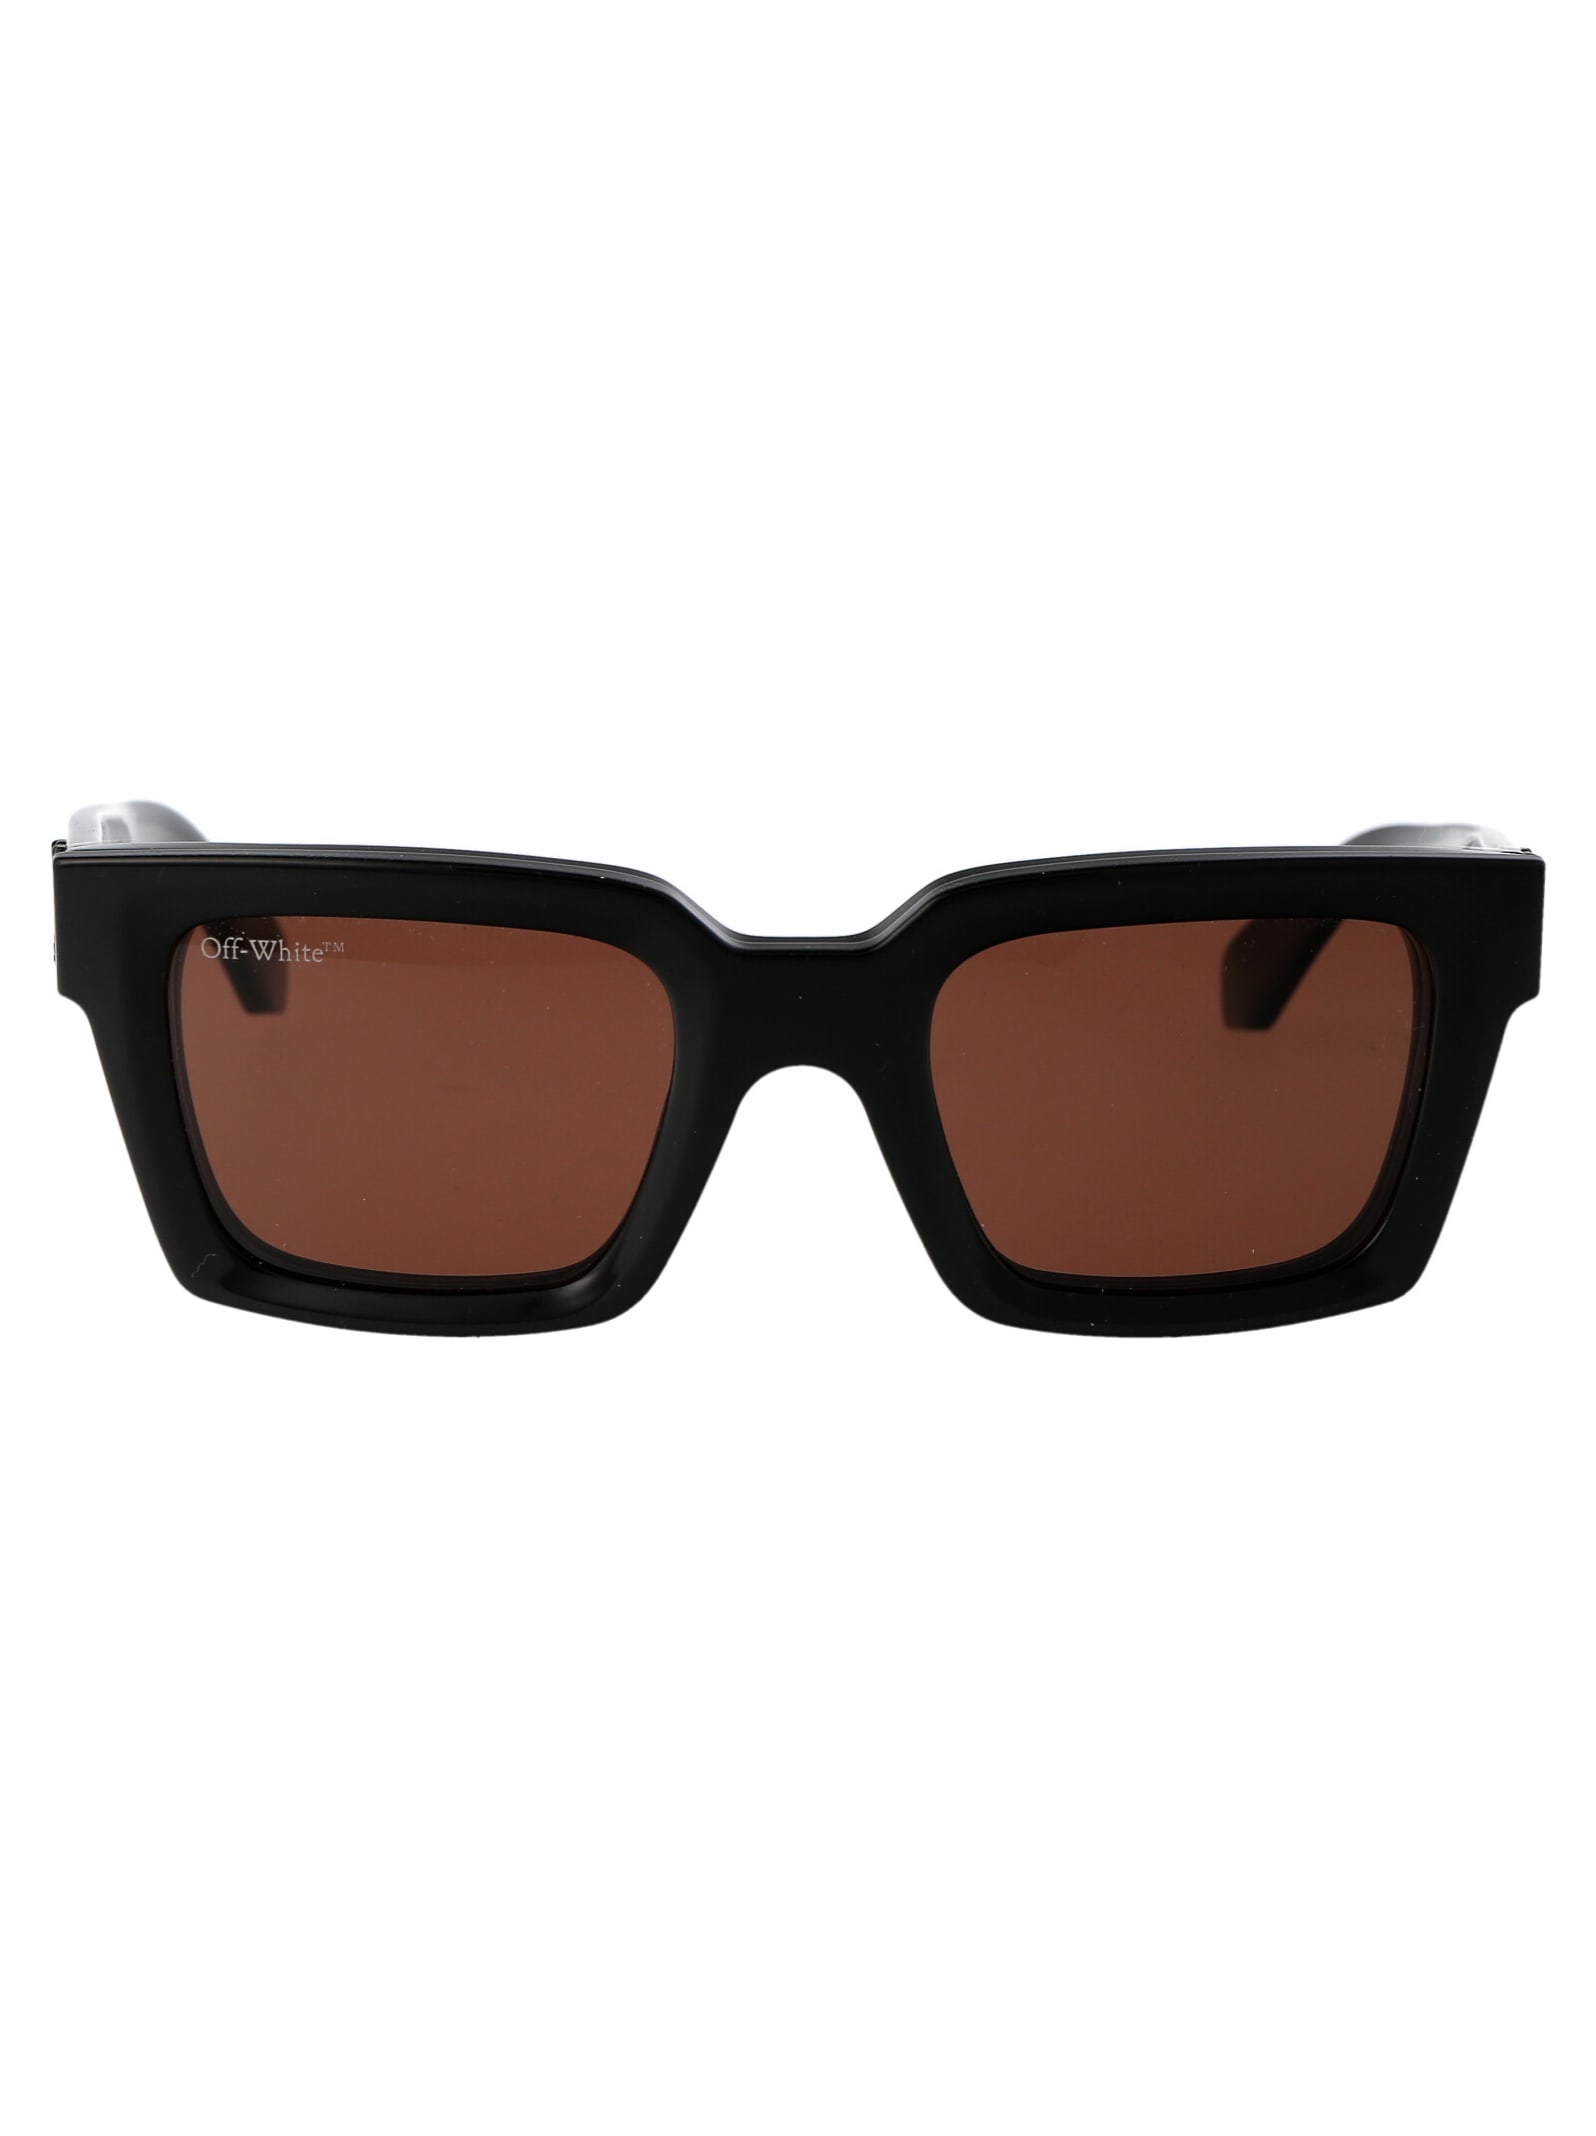 Off-white Clip On Sunglasses In 1060 Black